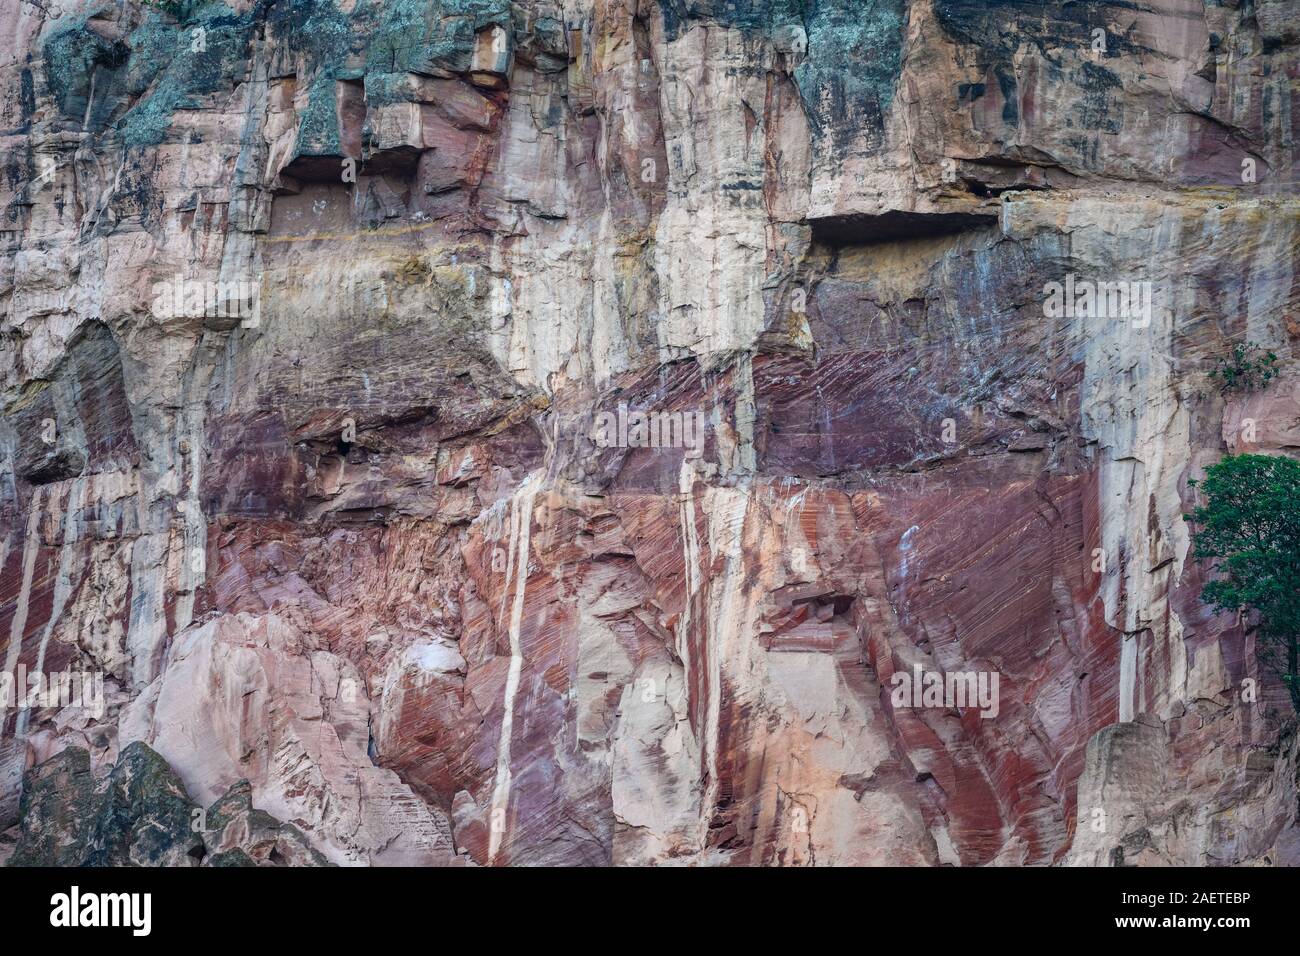 Capas de roca arenisca coloridas con truncar crossbeds debido a la erosión, expuestos en las paredes de roca de Chapada. Tocantins, Brasil, América del Sur. Foto de stock